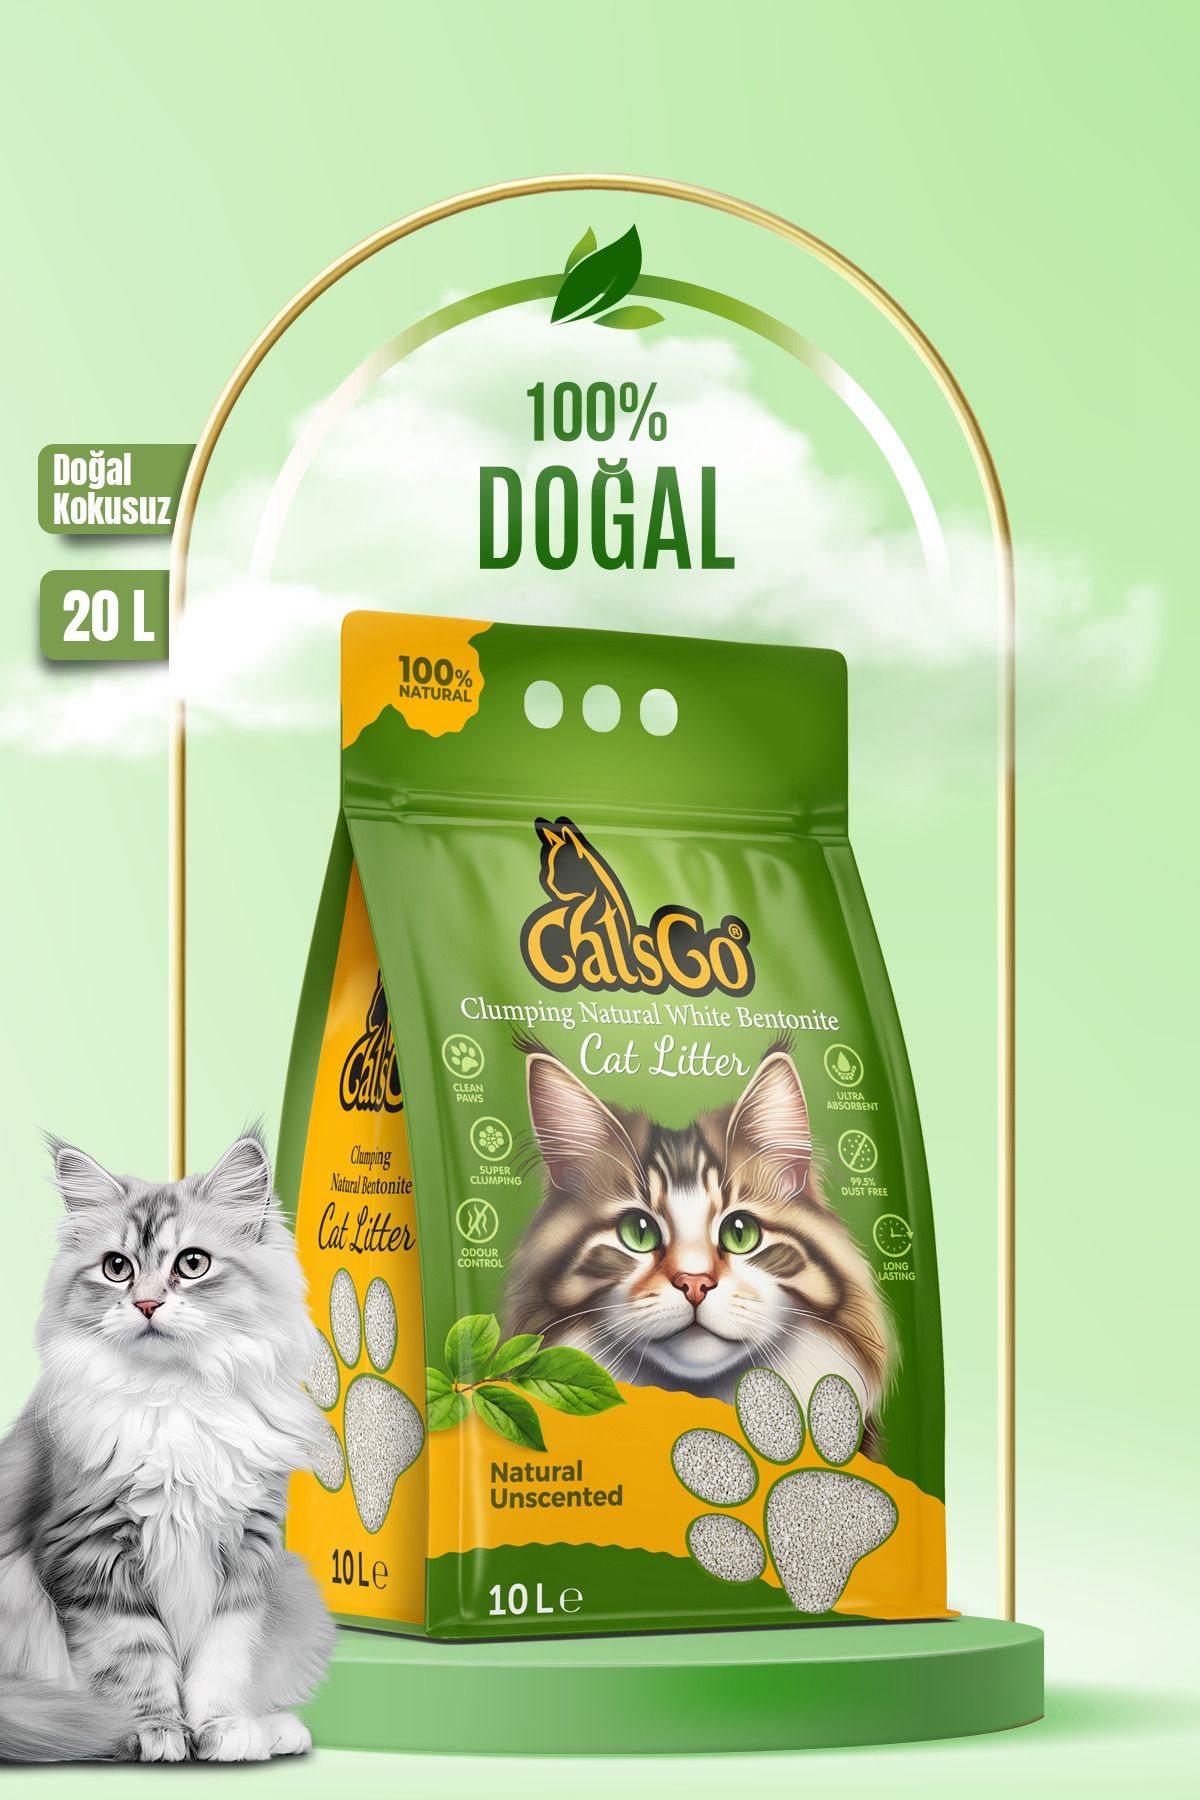 CatsGo Cat’s Go Natural Premium Organik Kedi Kumu 10 Lt 2 Adet